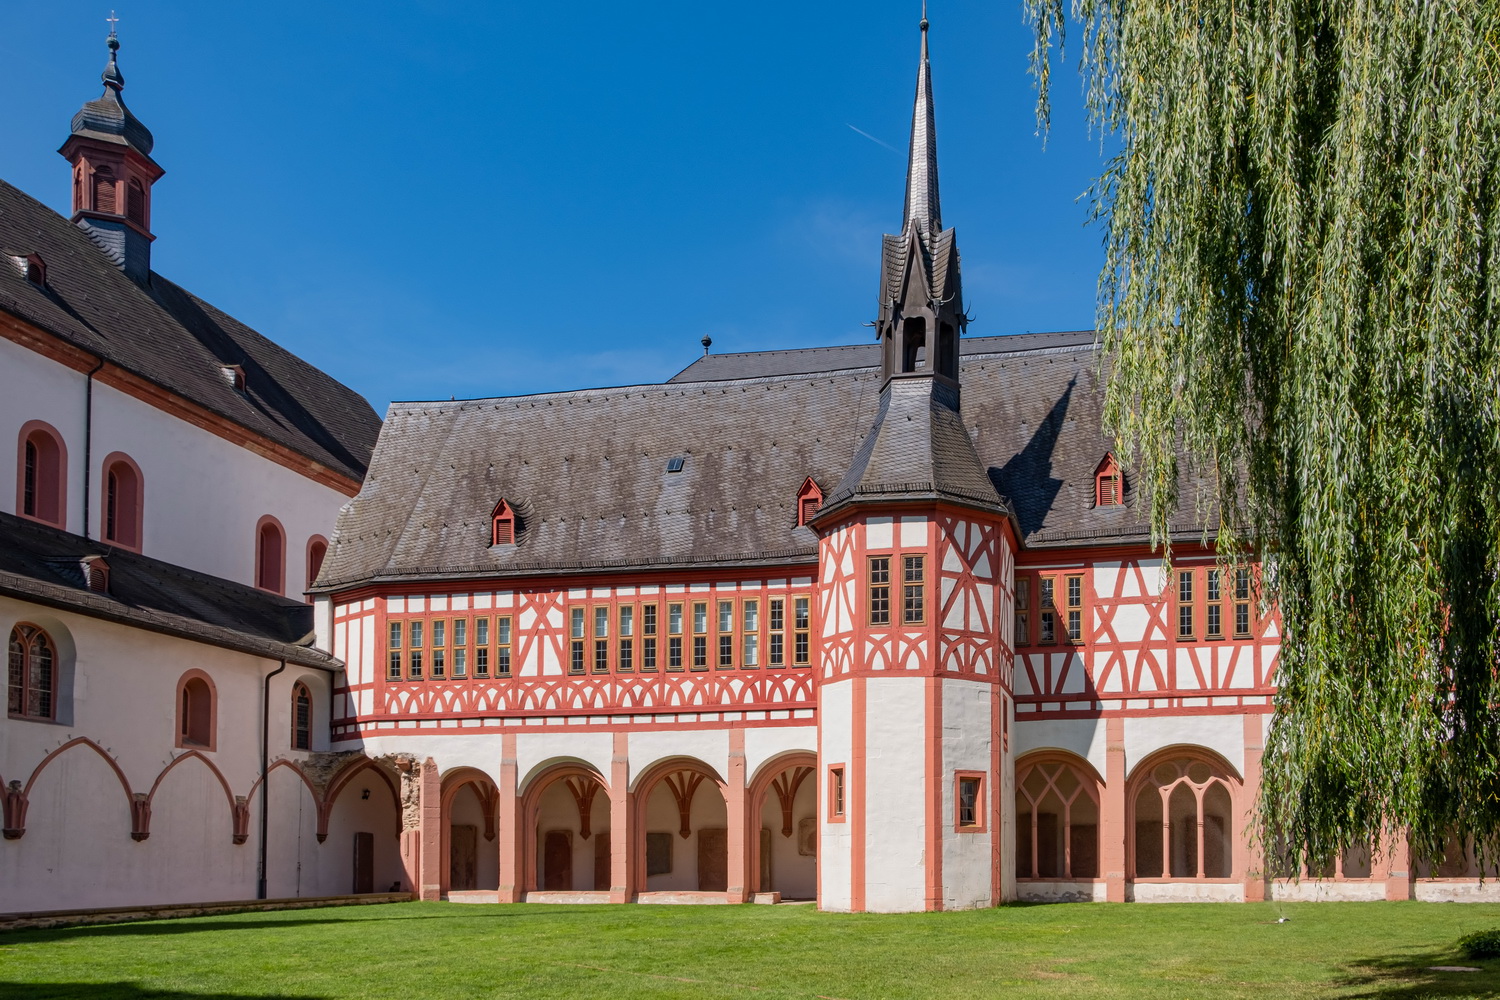 Kloster Eberbach von 1136 - aufgelöst 1803. Schauplatz des Films: Im Namen der Rose